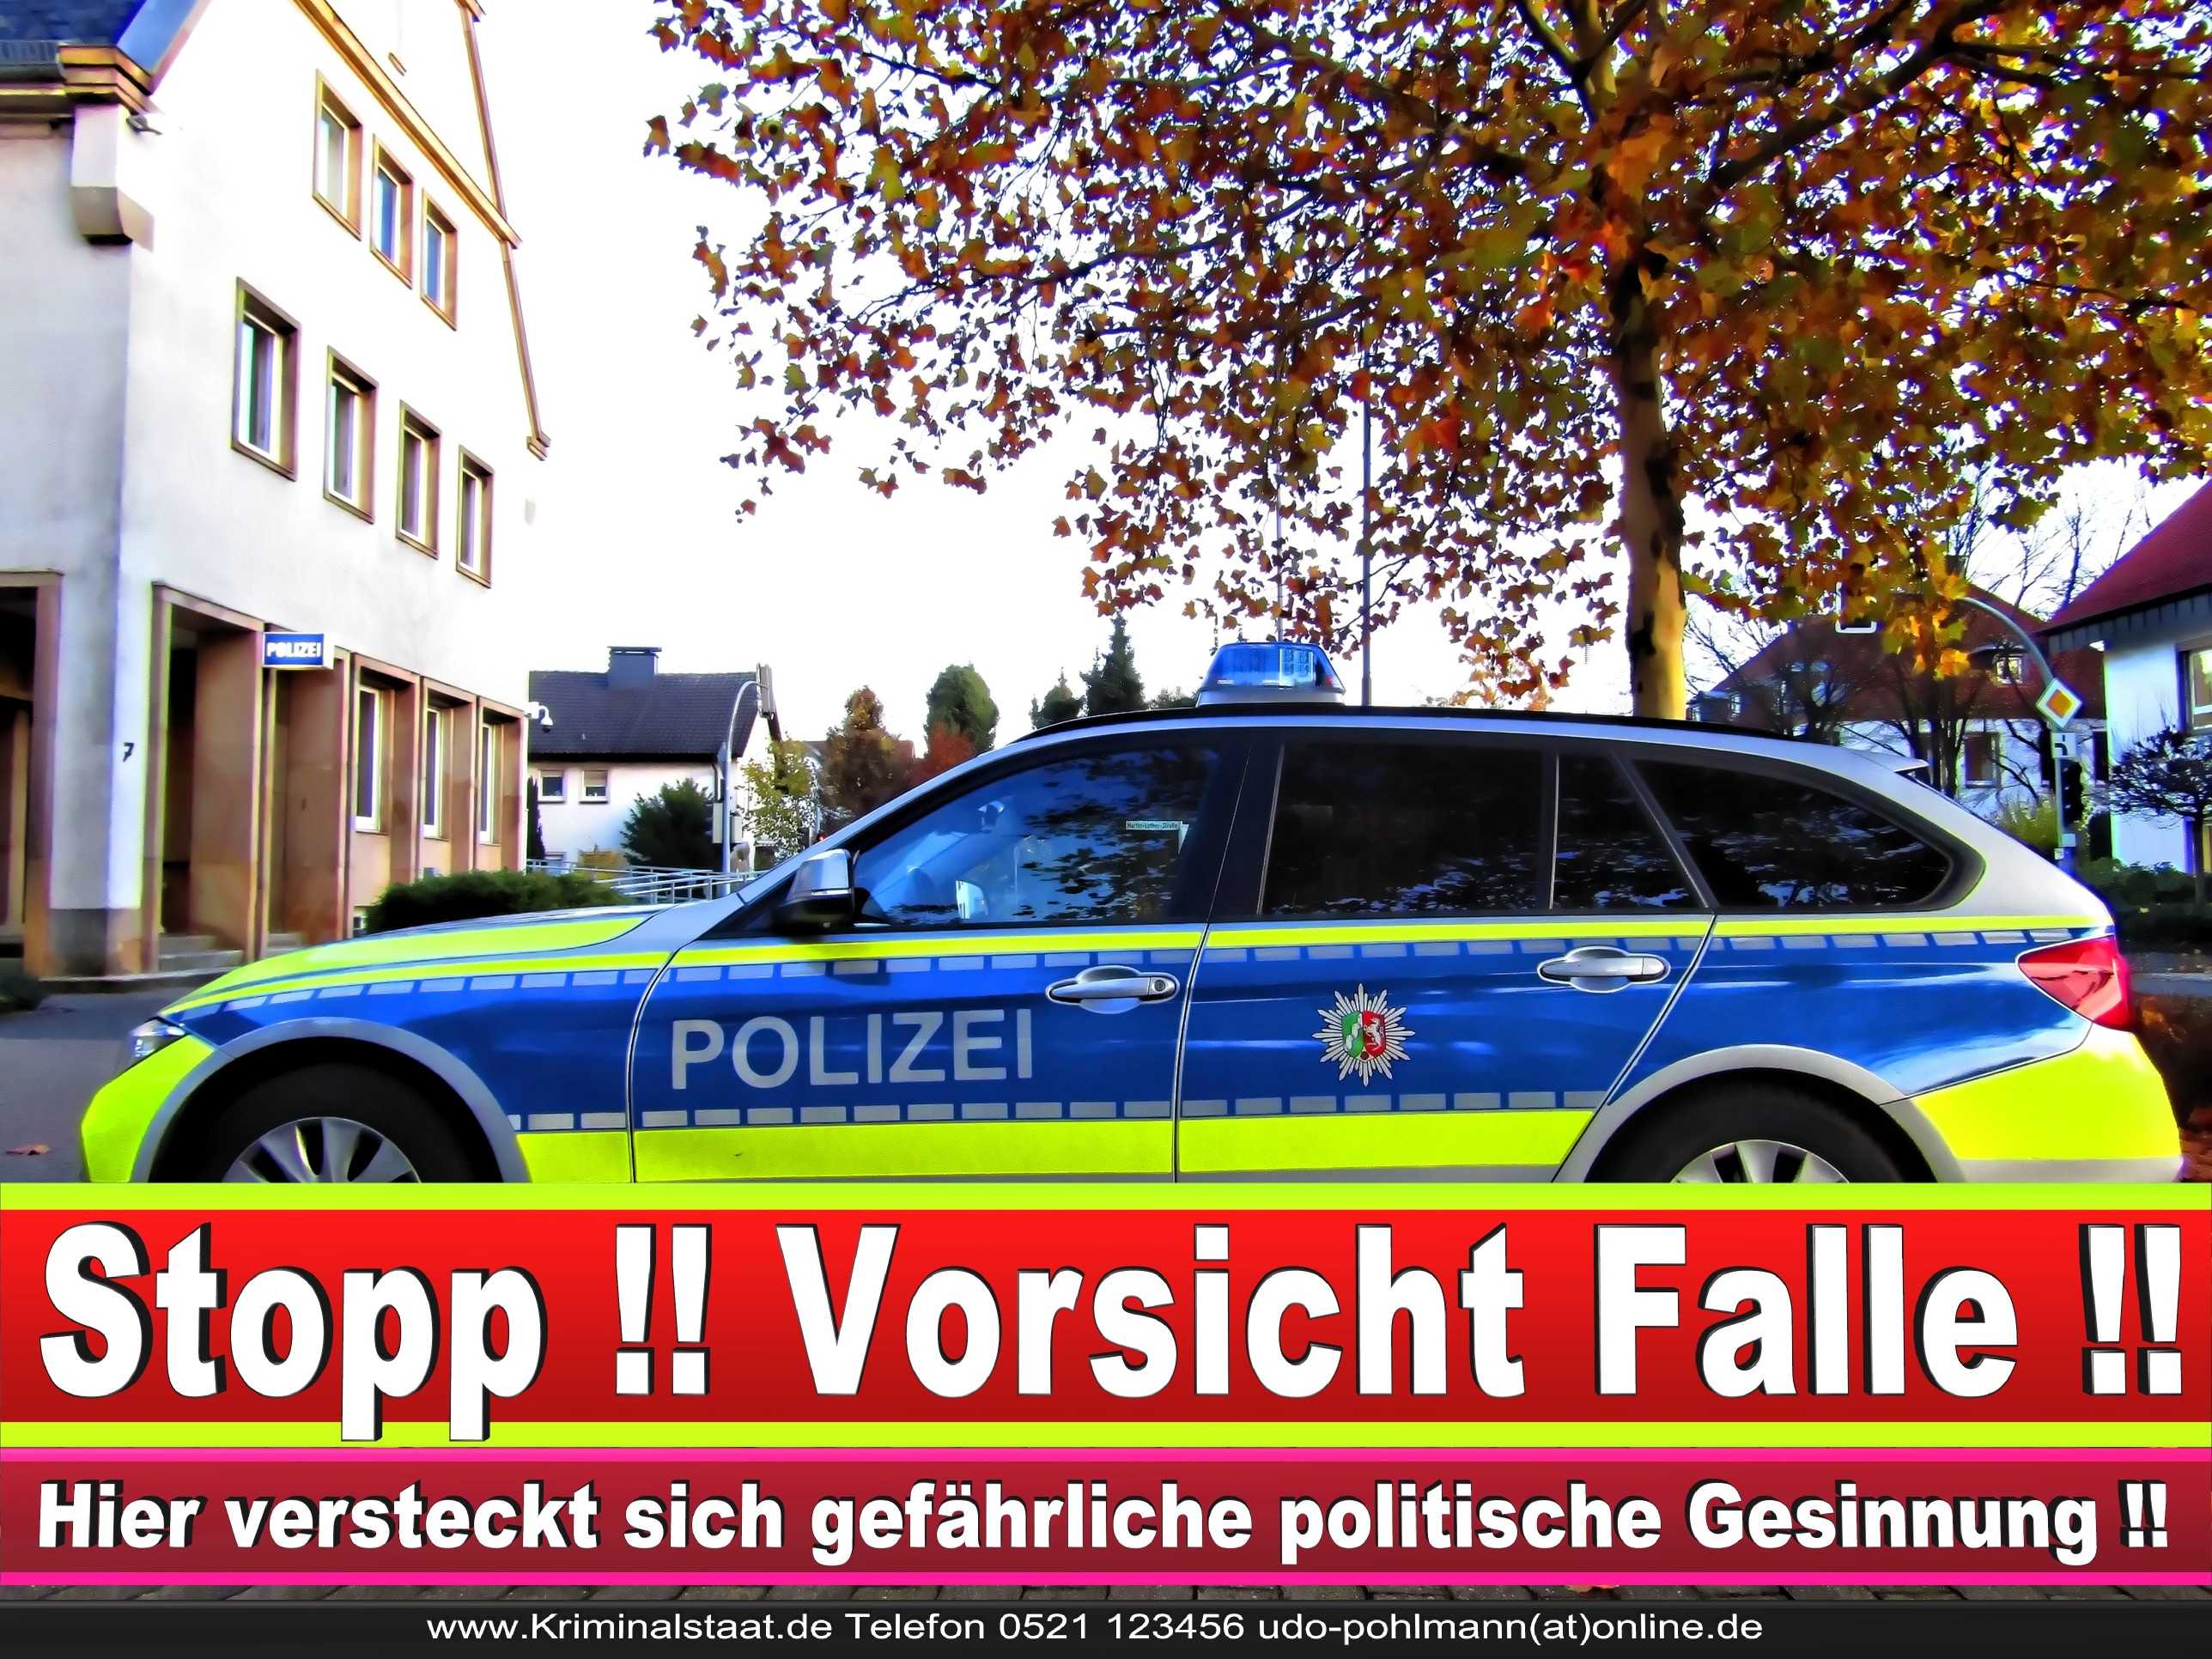 CDU Steinhagen Halle Harsewinkel Gütersloh Bielefeld Polizeirevier Polizisten Verurteilt Drogen Urteil Strafe Korruption Verbrechen Mafia Organisierte Kriminalität (5)